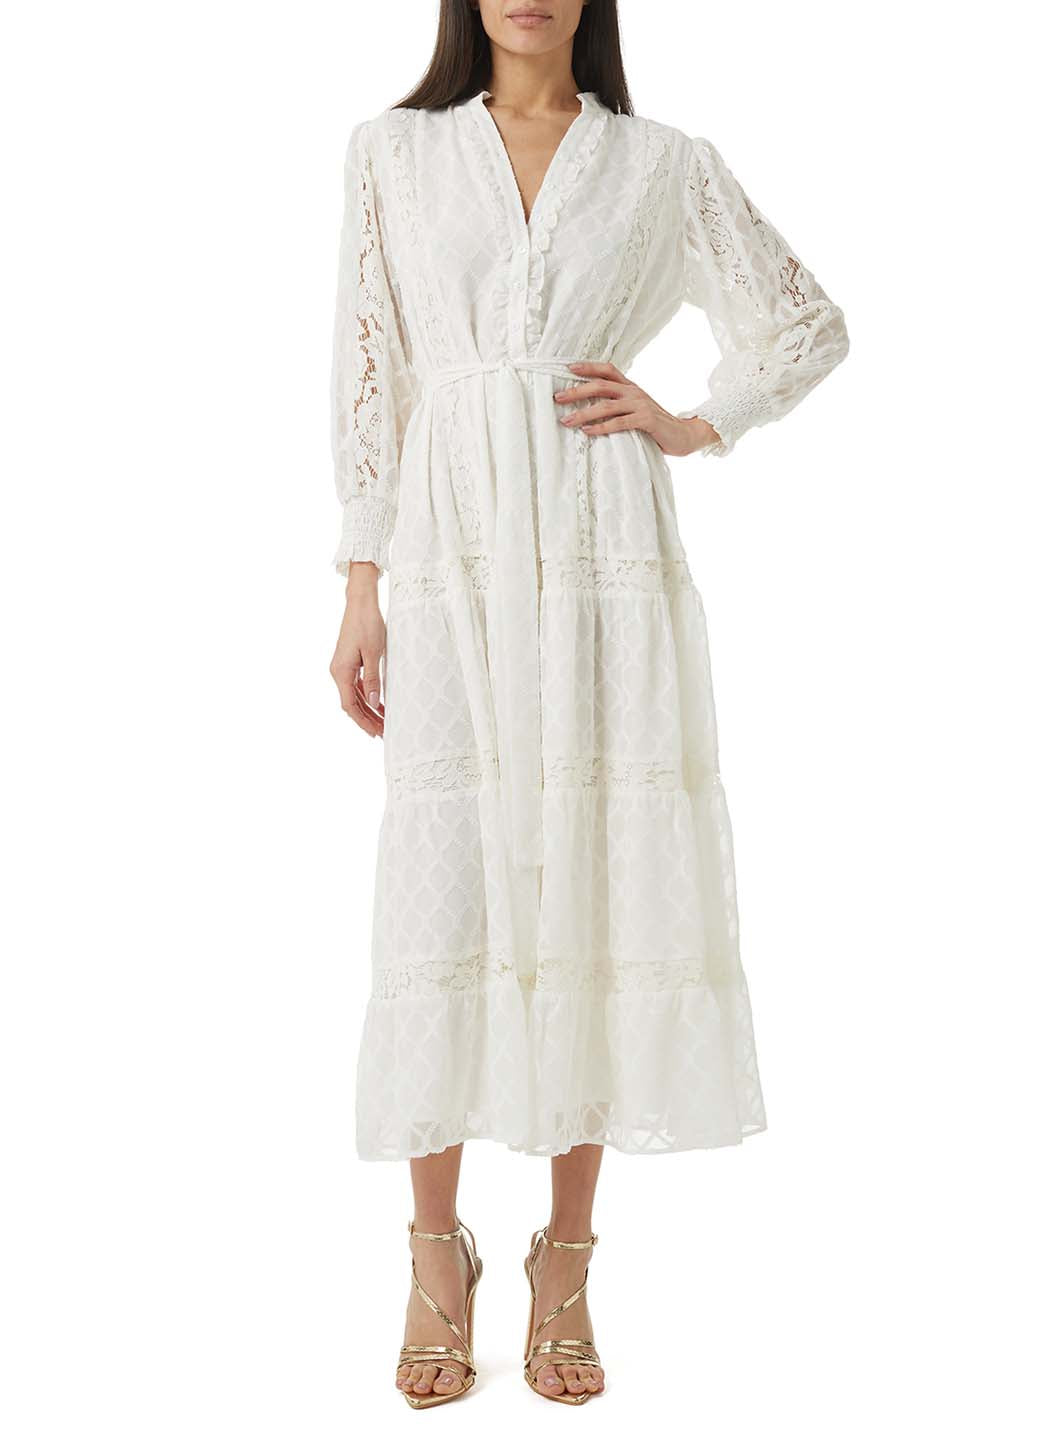 dahlia white midi dress posed